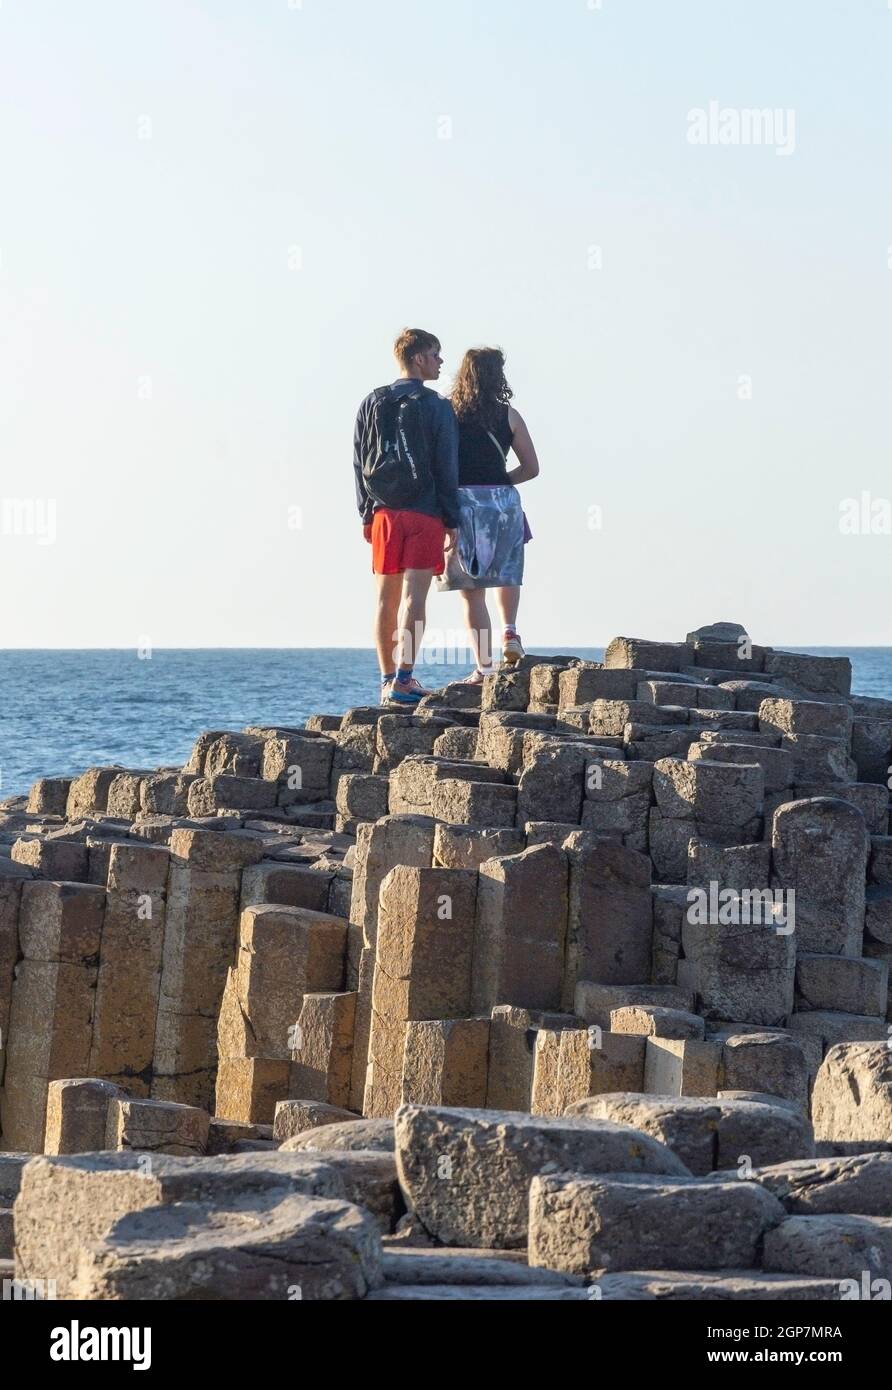 Junges Paar, das auf Basaltsäulen steht, The Giant's Causeway, Causeway Coast, in der Nähe von Bushmills, County Antrim, Nordirland, Vereinigtes Königreich Stockfoto